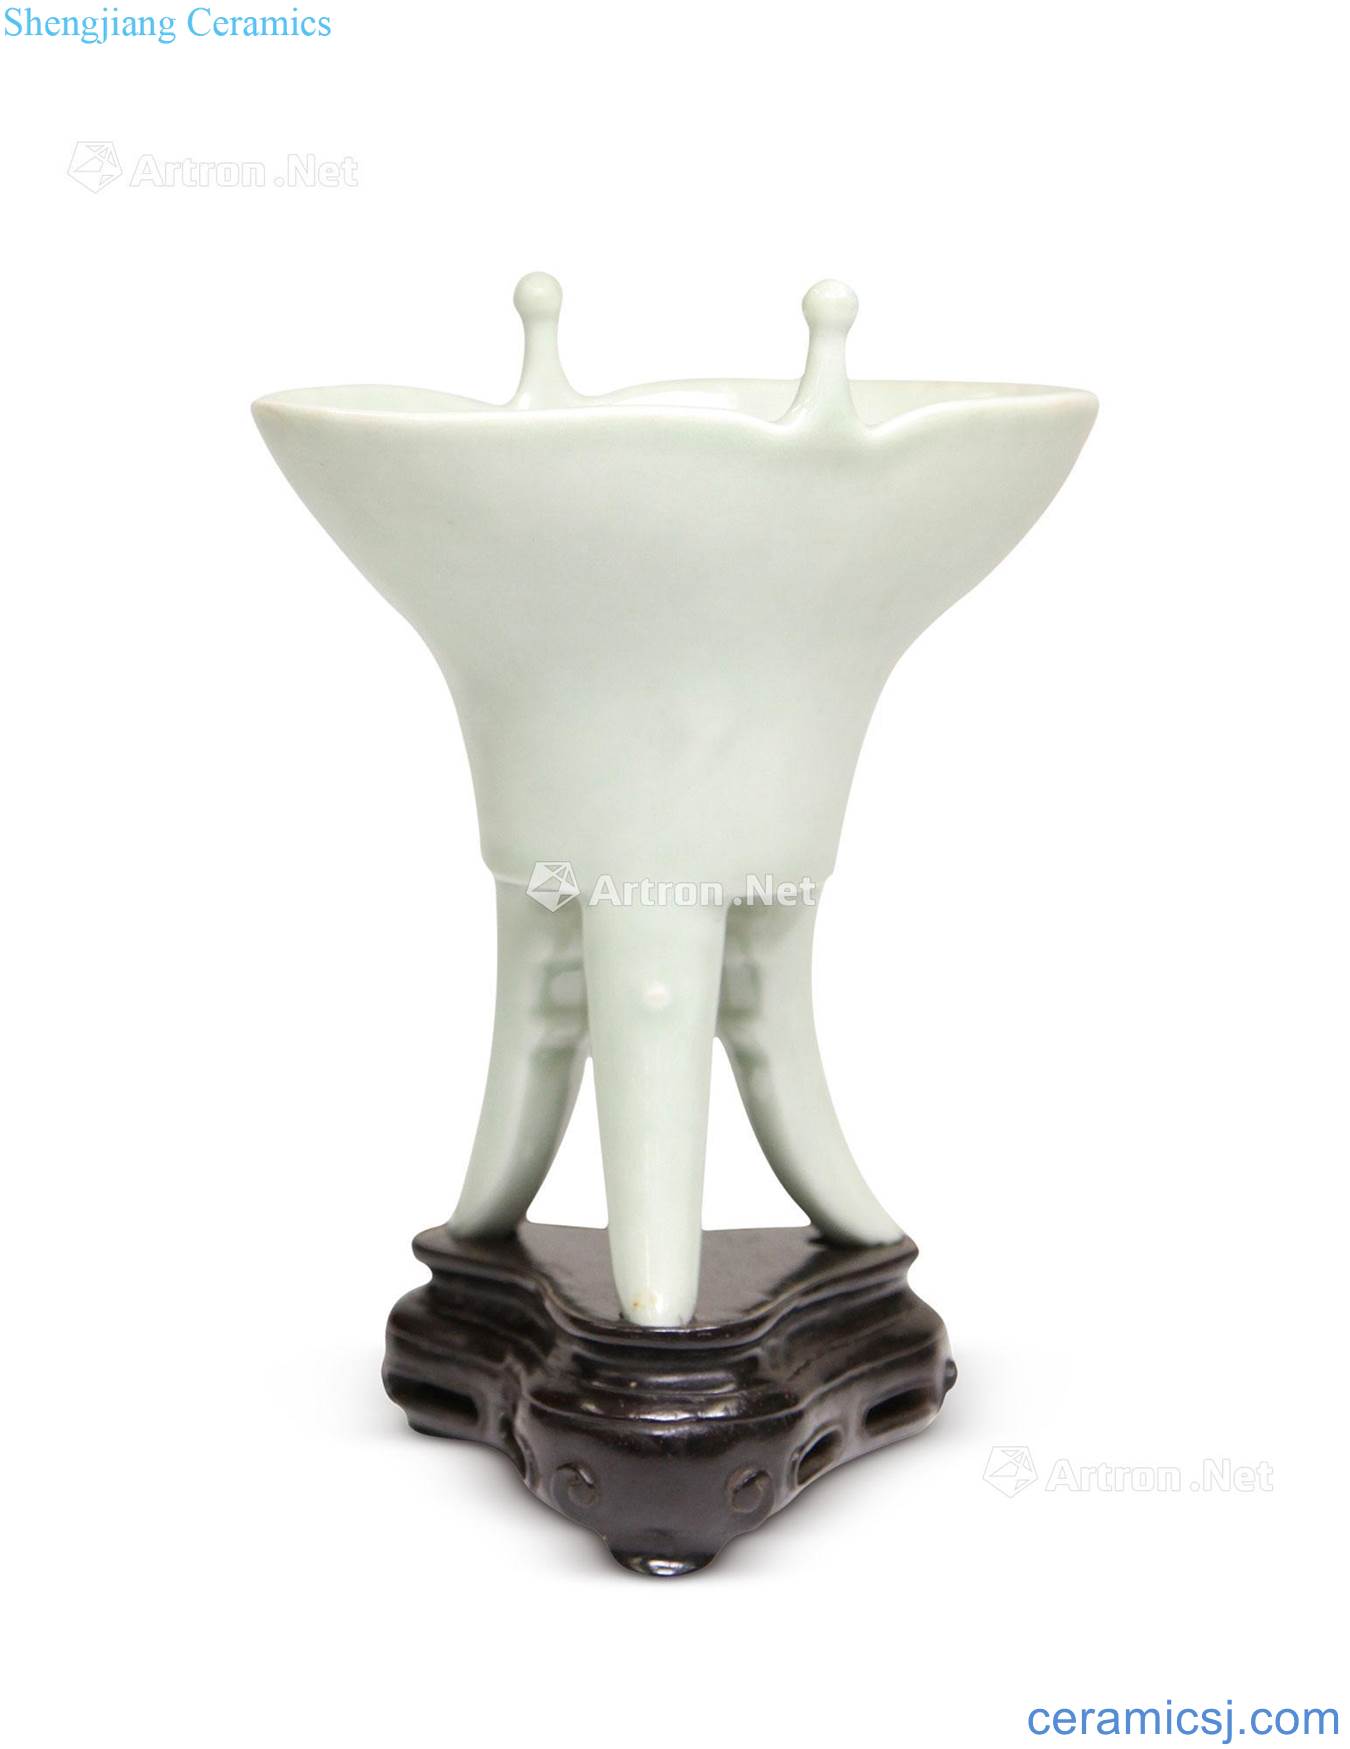 Qing dynasty celadon goblet